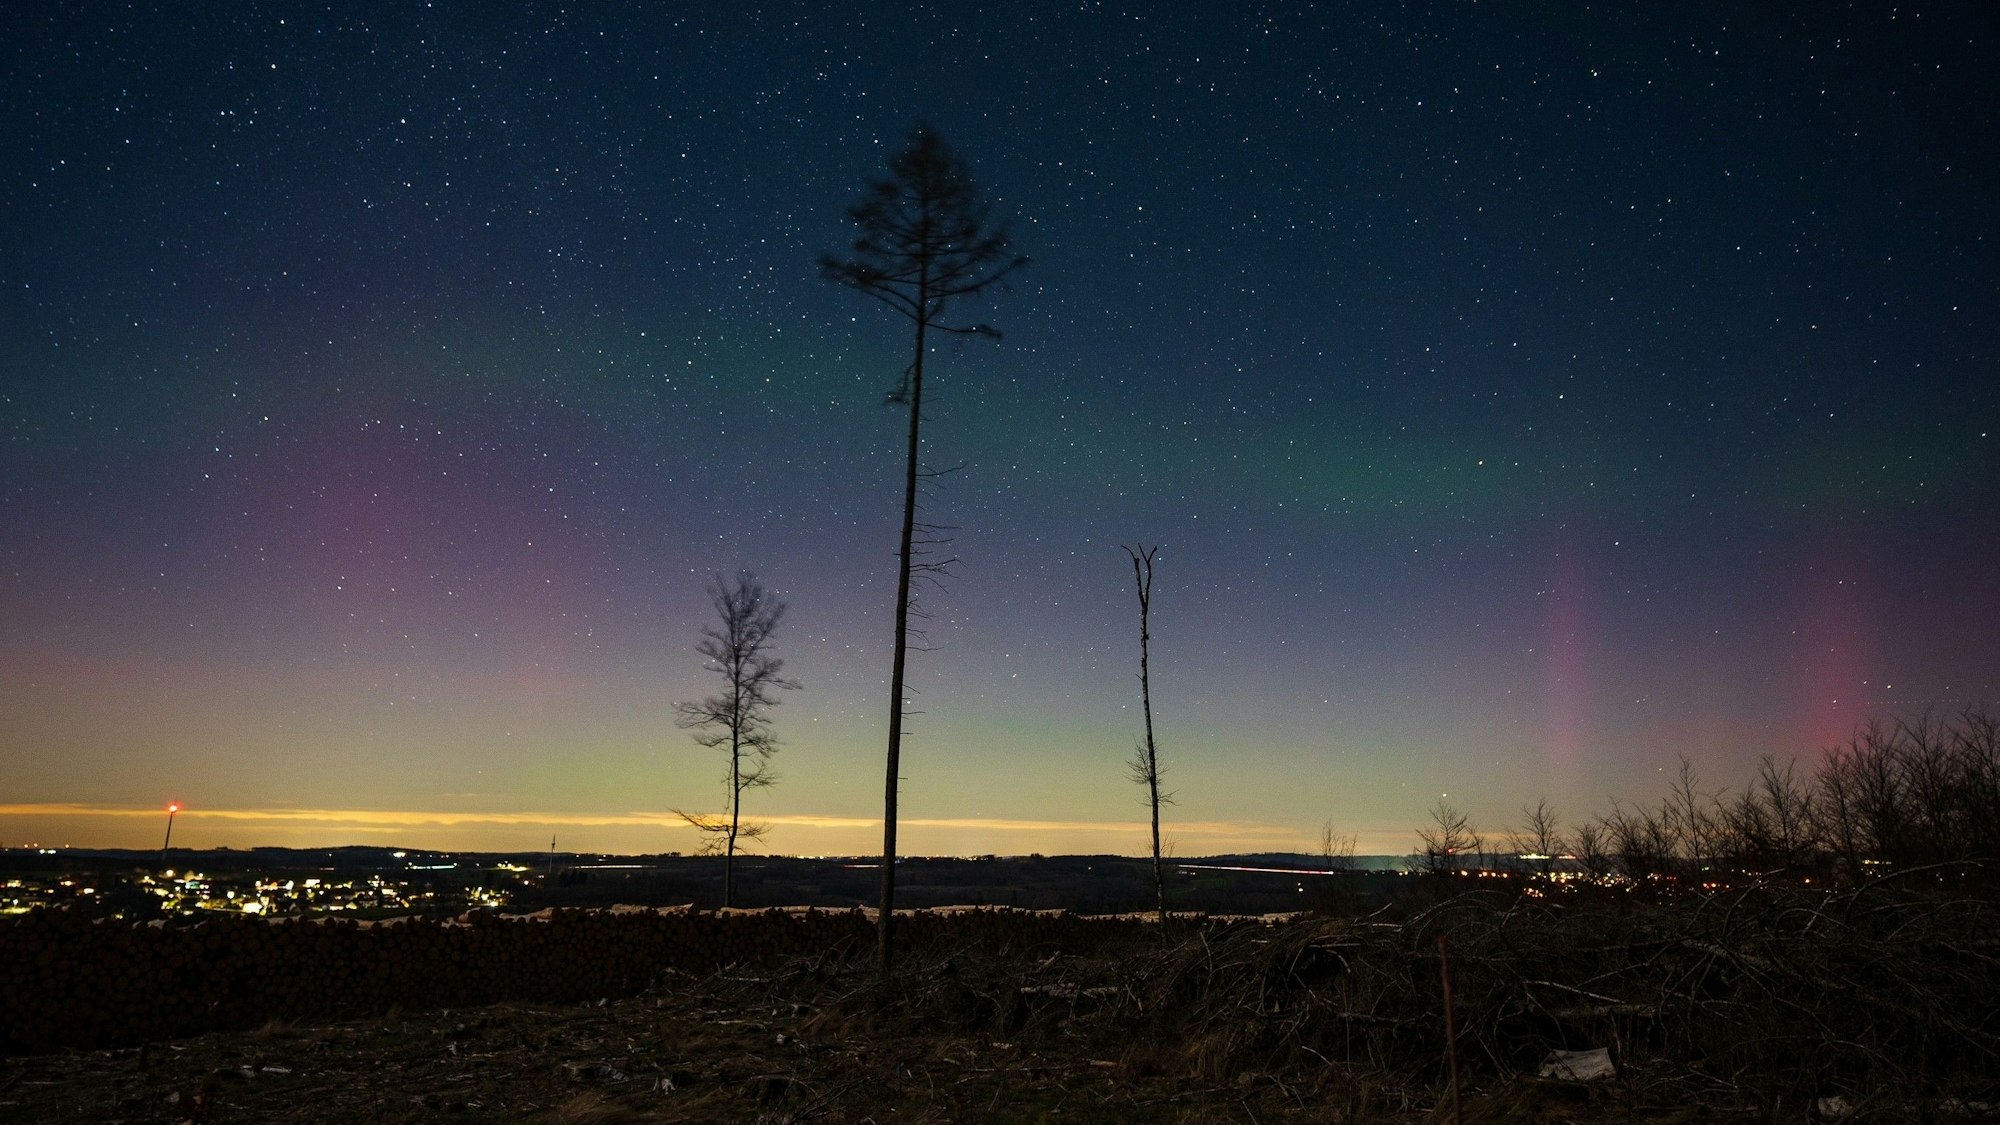 Am dunklen Horizont sind ganz leicht rosafarbene und grüne Polarlichter zu erkennen. Drei lange Bäume ragen davor in die Höhe.